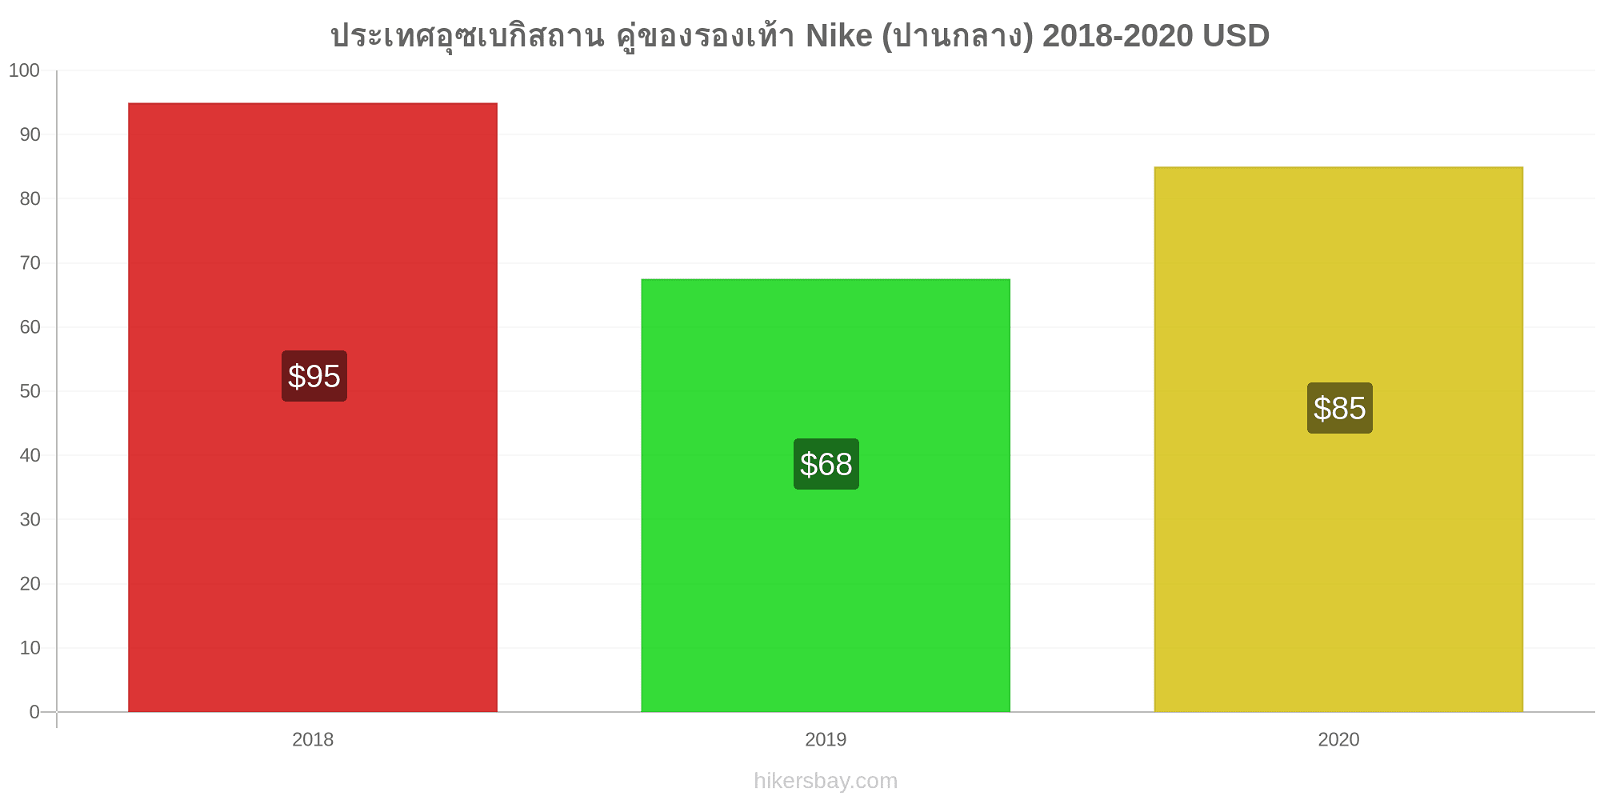 ประเทศอุซเบกิสถาน การเปลี่ยนแปลงราคา คู่ของรองเท้า Nike (ปานกลาง) hikersbay.com